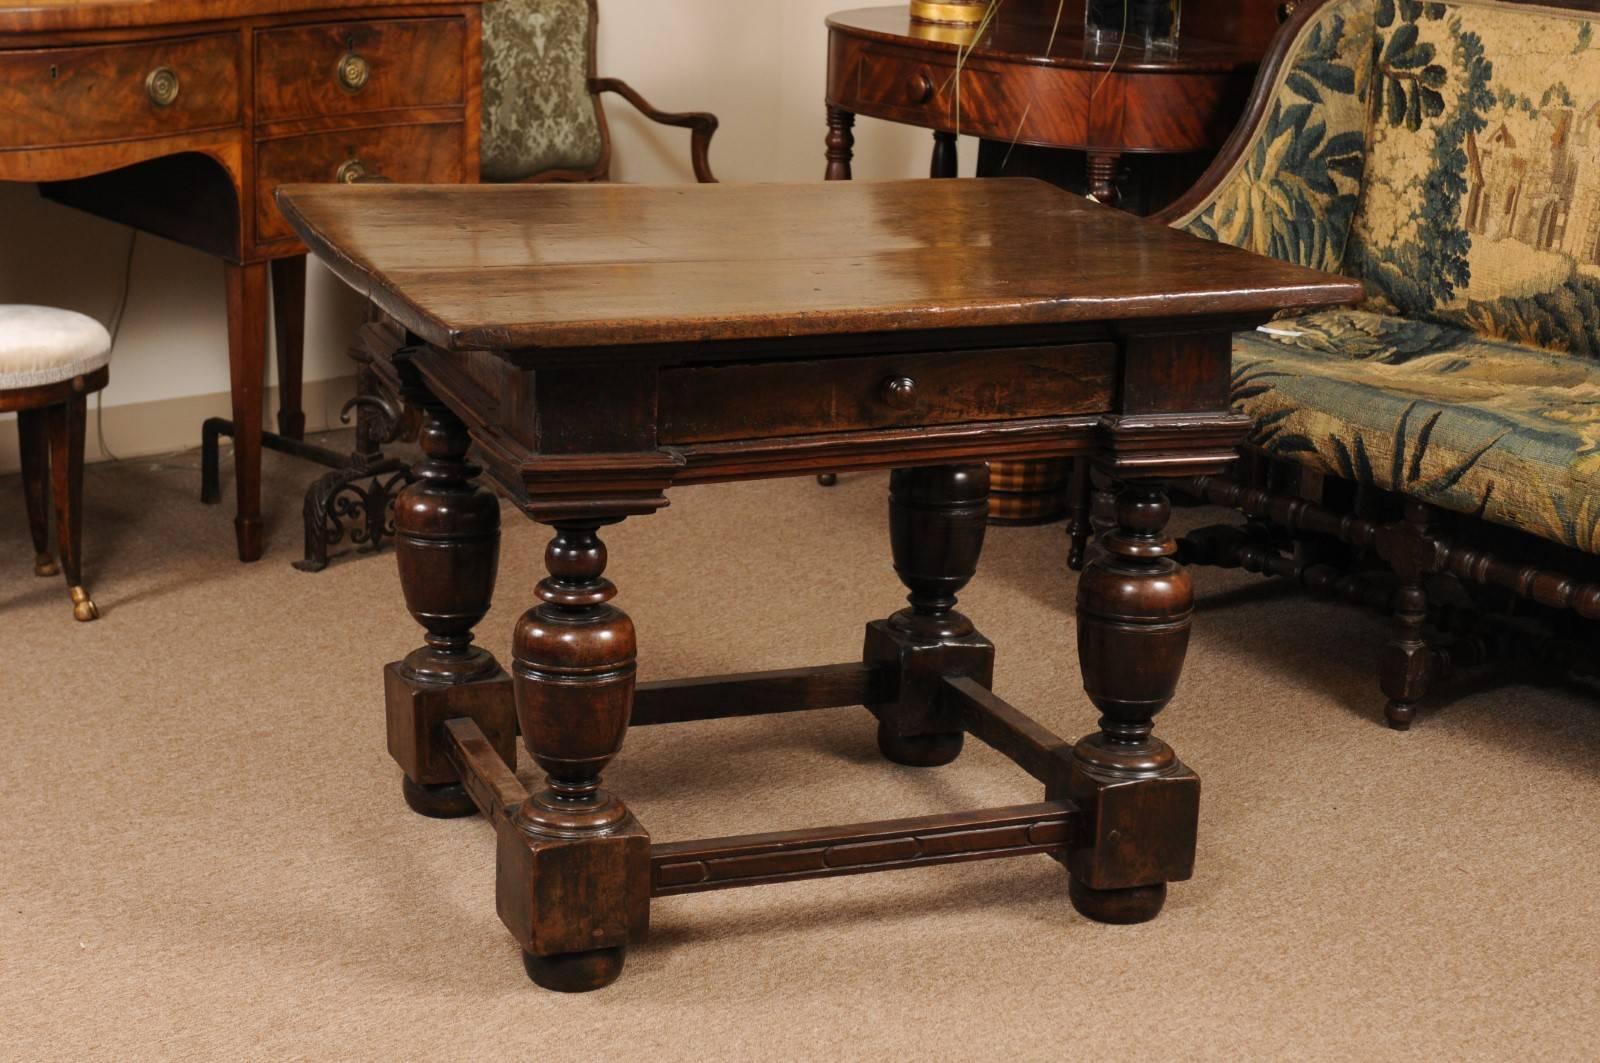 Italienischer Mitteltisch aus dem frühen 18. Jahrhundert mit einer einteiligen rechteckigen Platte. Der Fries mit großer Schublade und alle von gedrechselten Baluster Beinen mit Bahre und Brötchen Füße unterstützt. Der Tisch ist ein schönes